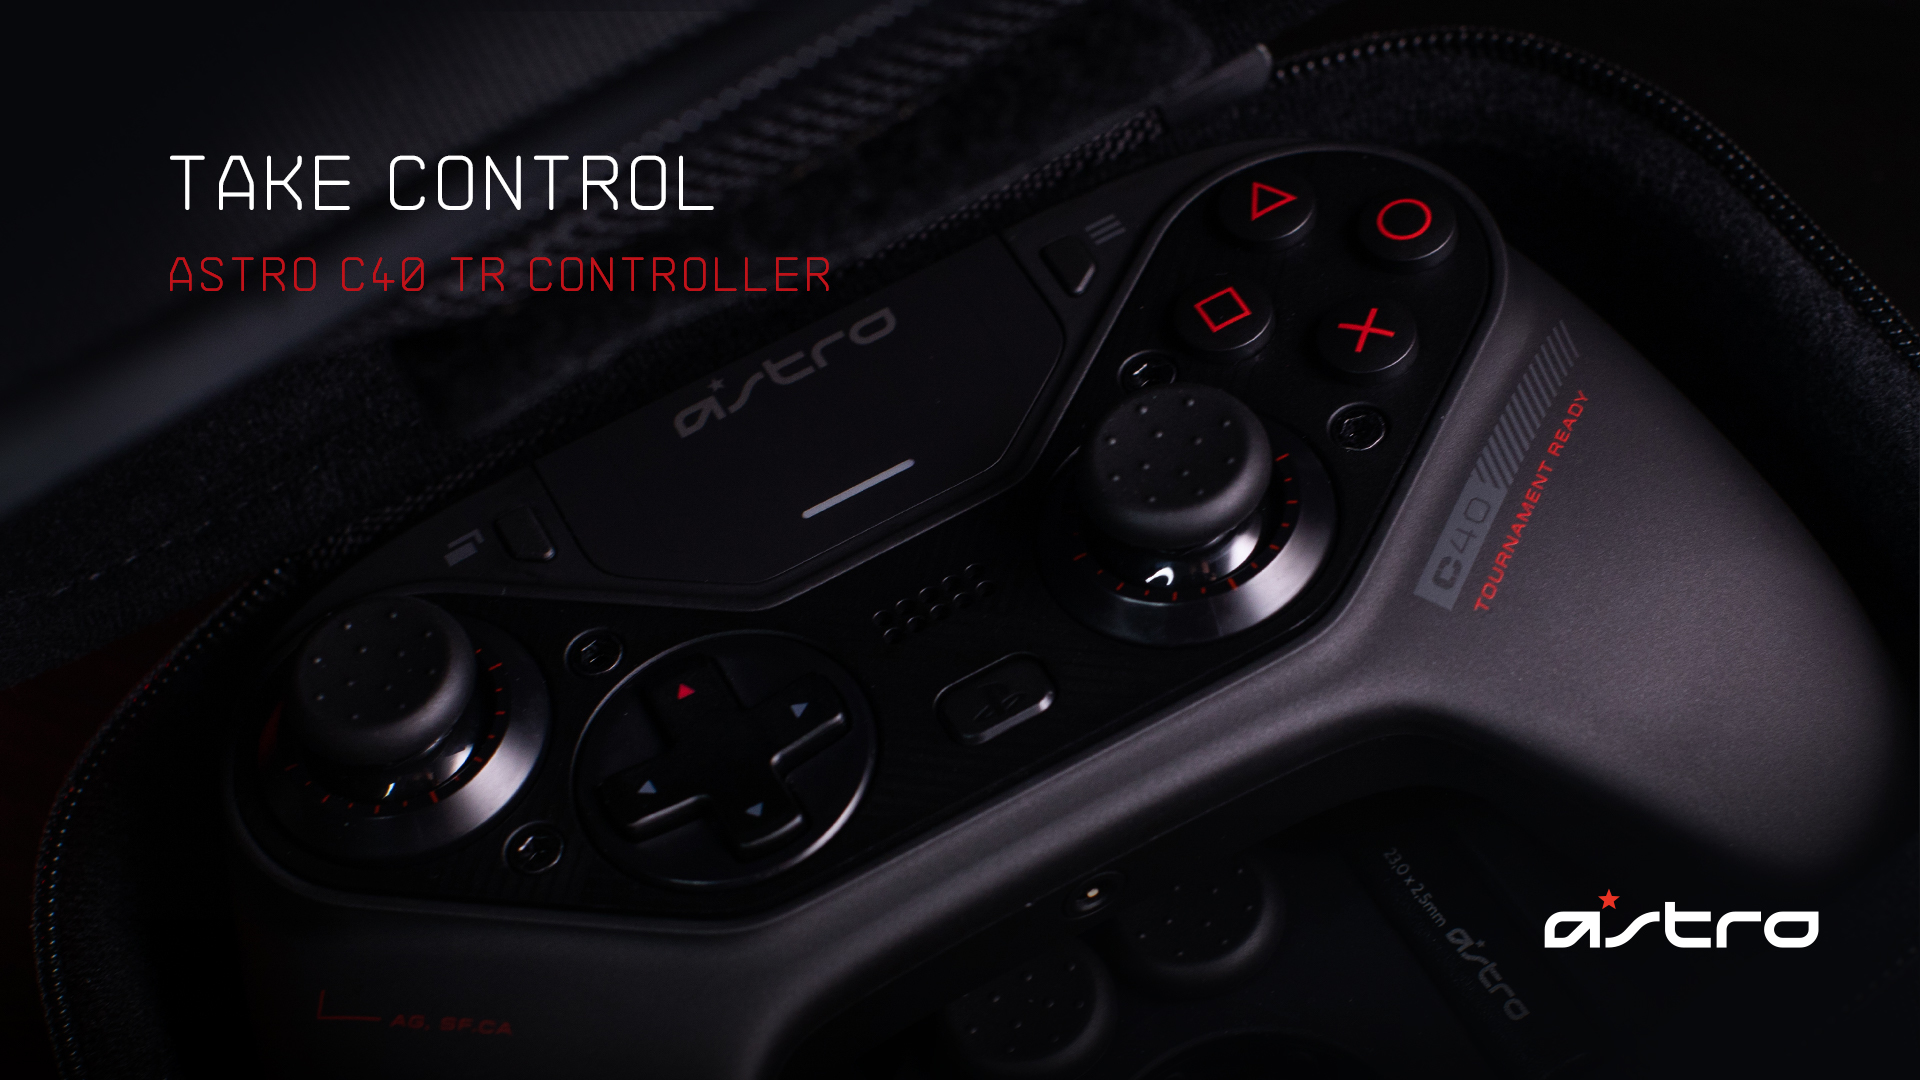 astro ps4 controller best buy